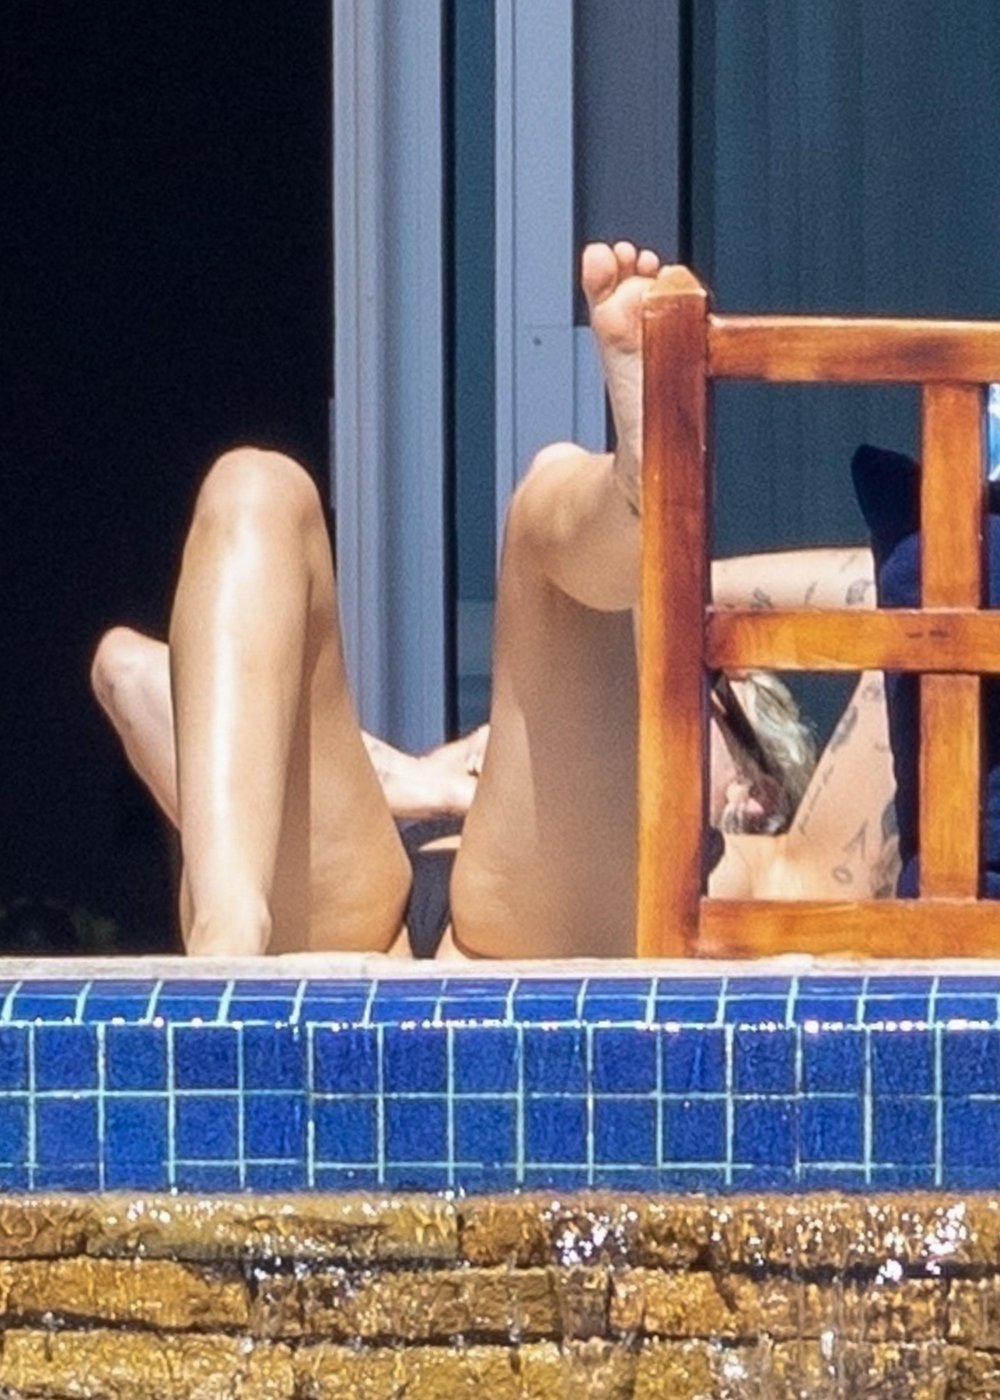 Miley-Cyrus-Feet-6322342.jpg